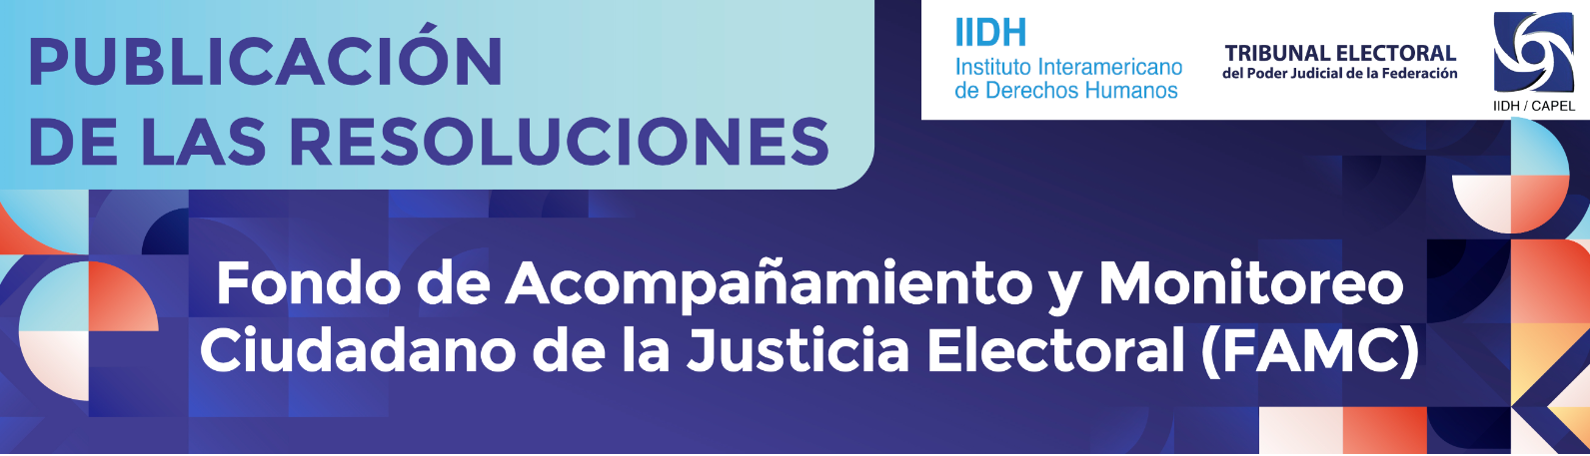 Fondo de Acompañamiento y Monitoreo Ciudadano de la Justicia Electoral (FAMC)